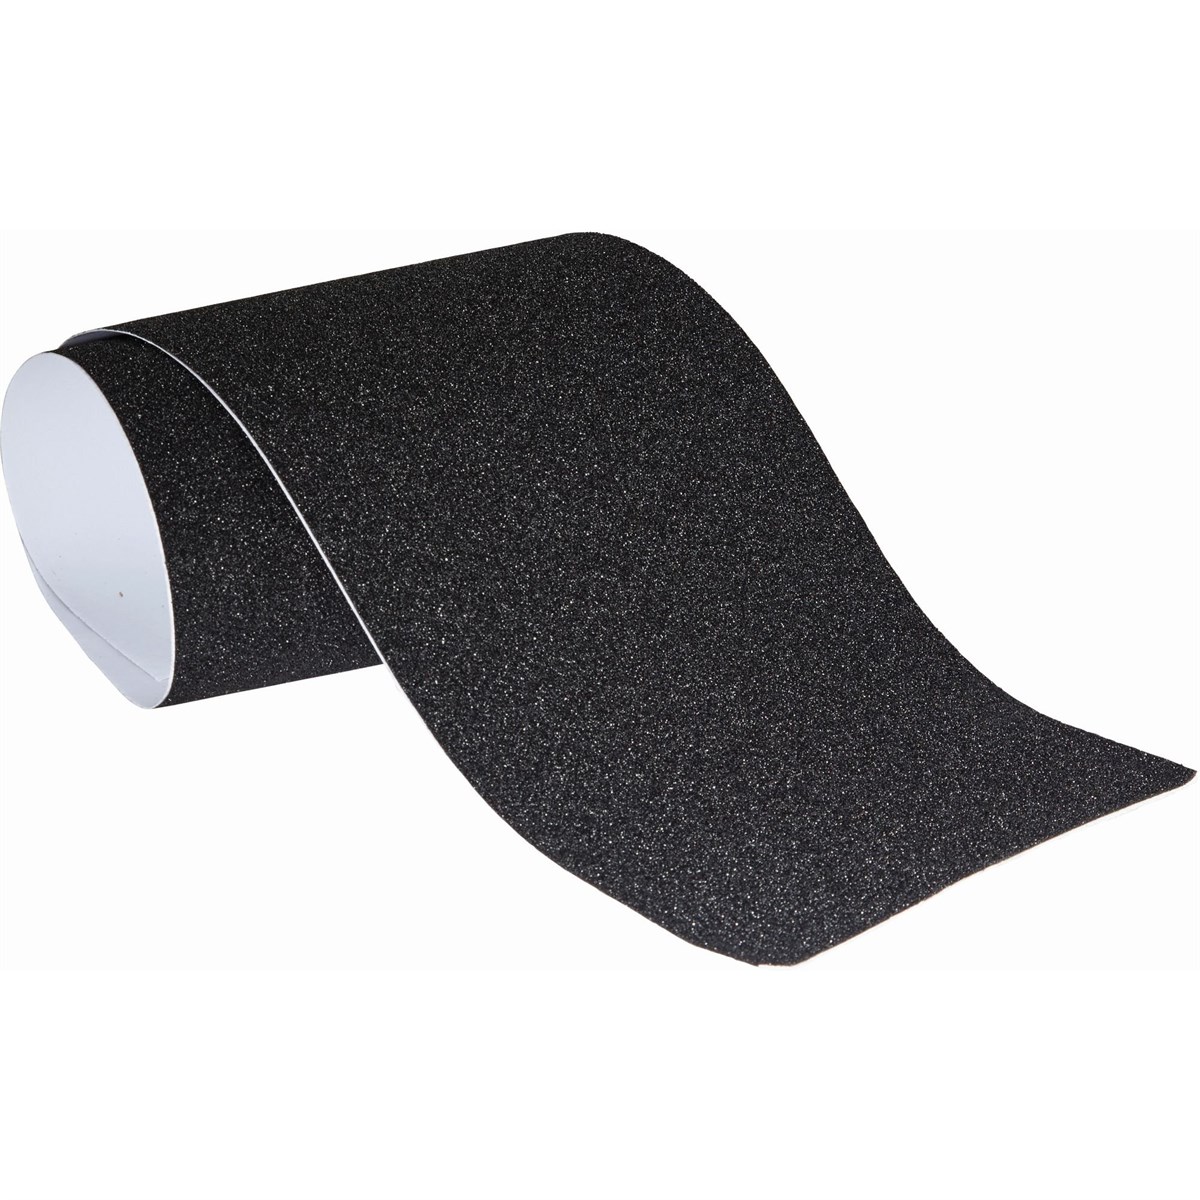 84 self-adhesive Anto-Slip pads, Ø 0.47'', black, round